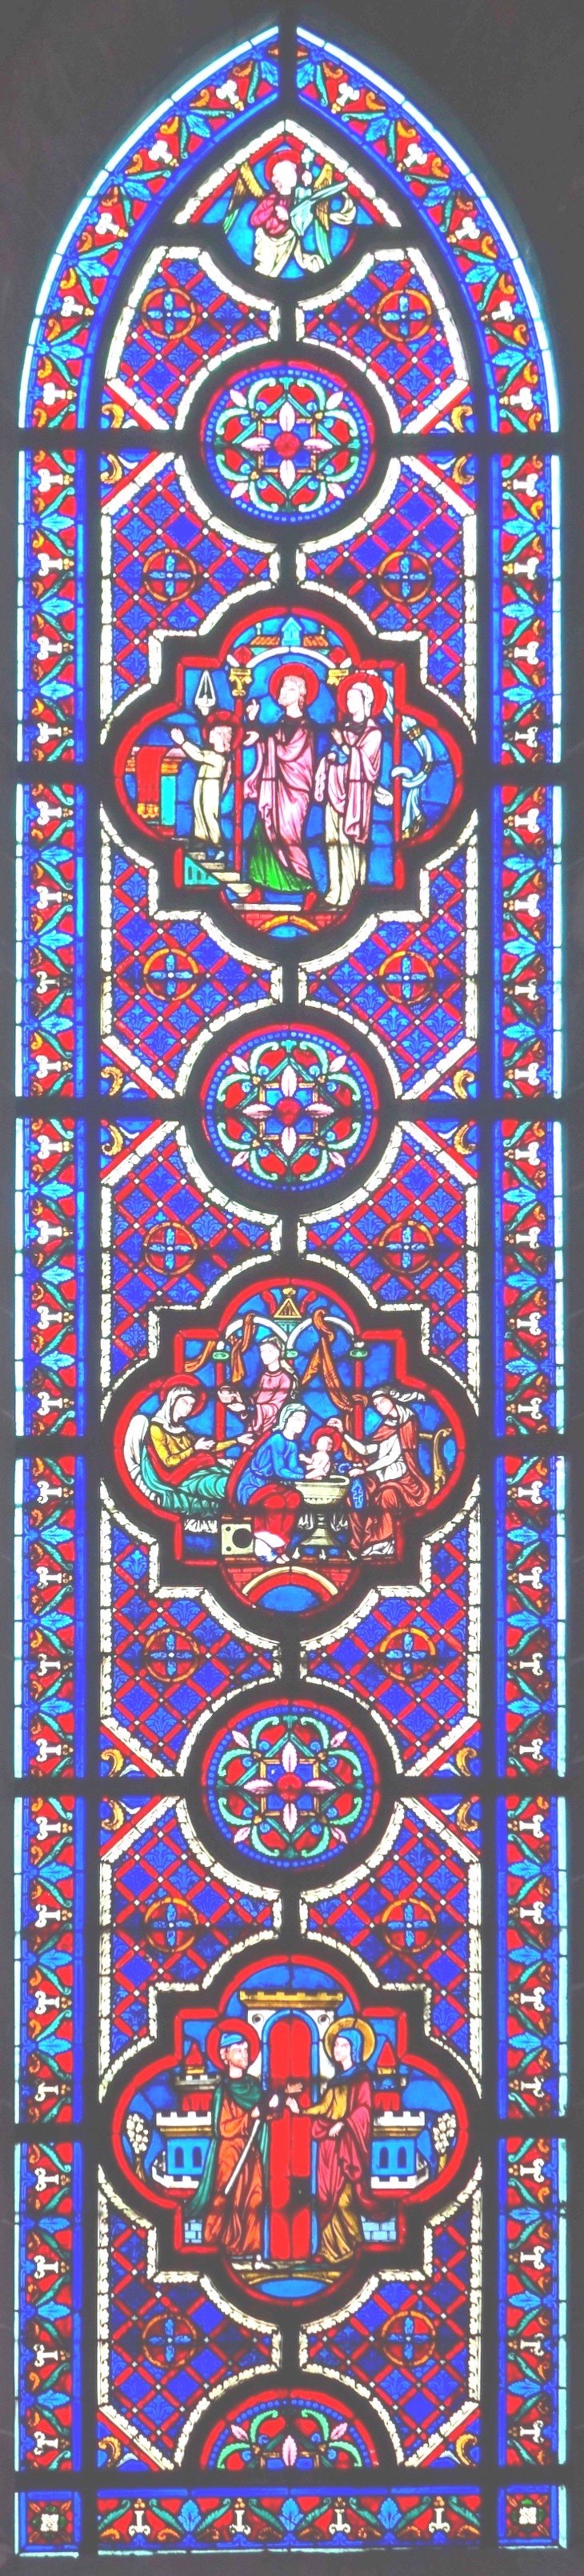 B5 - vitraux de la chapelle épiscopale saint-omer